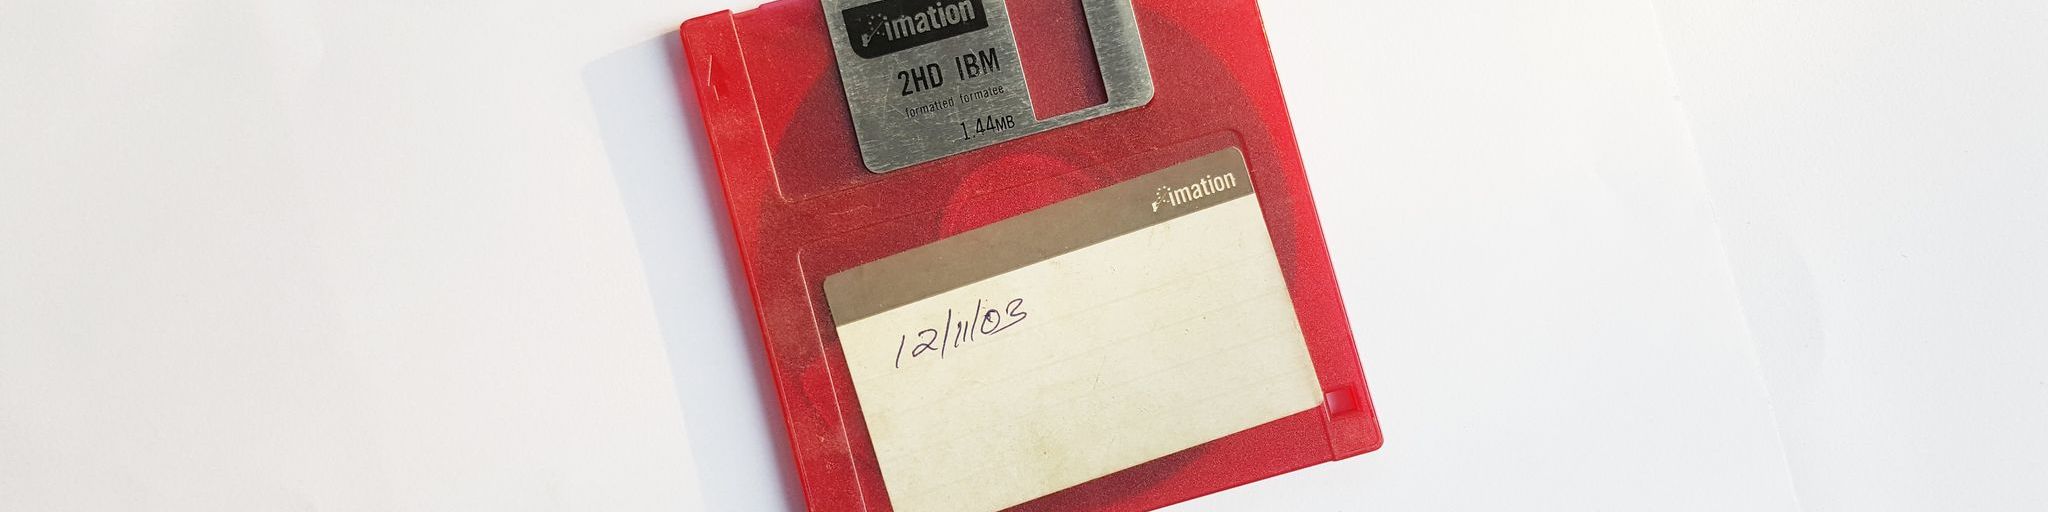 Red Floppy Disk